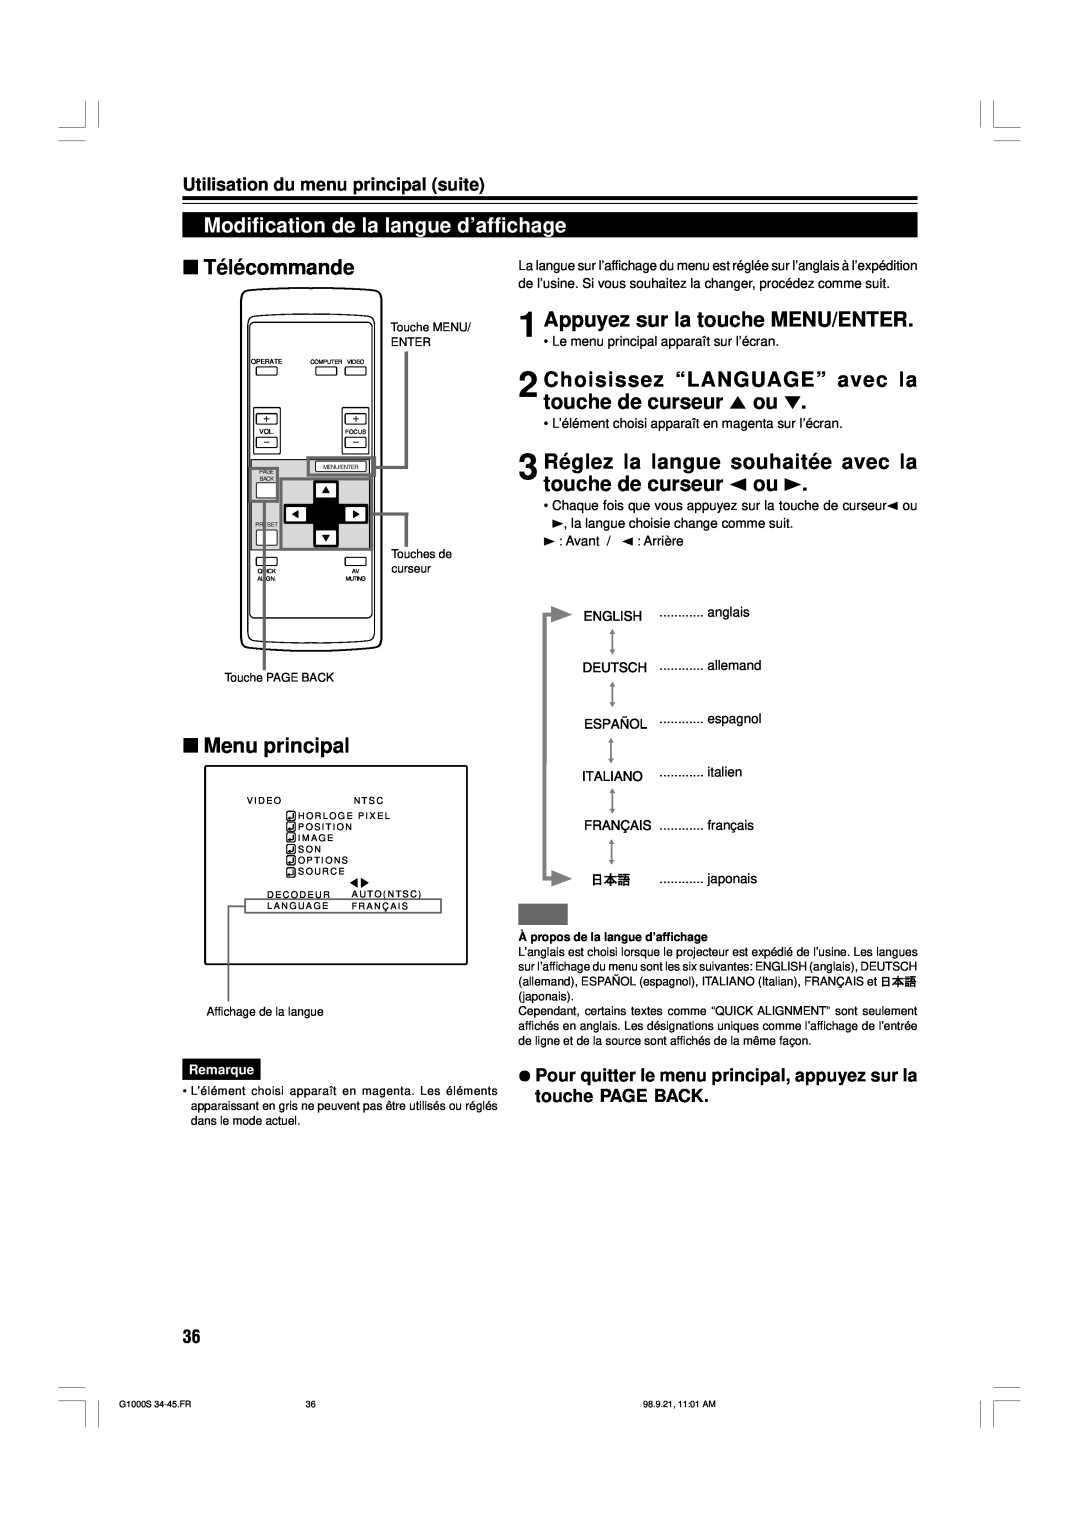 JVC G1000S manual Modification de la langue d’affichage, Choisissez “LANGUAGE” avec la touche de curseur 5 ou, Télécommande 